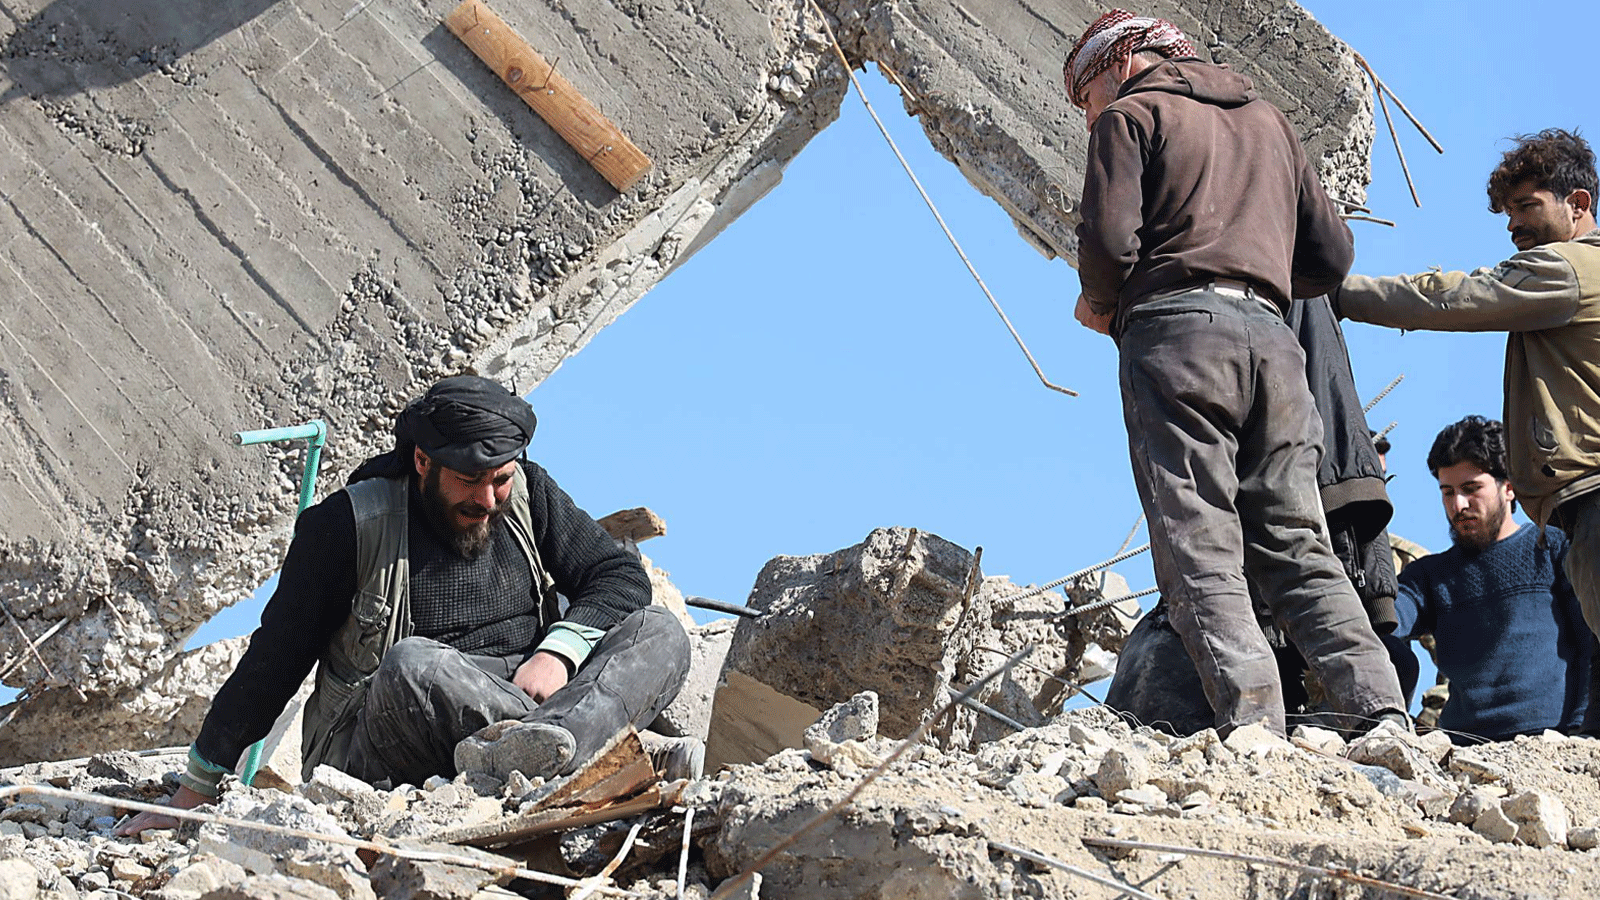 رجلٌ سوري يبكي وهو يجلس فوق أنقاض مبنى منهار في 7 شباط\ فبراير 2023 في بلدة جندريس في الجزء الذي يسيطر عليه المتمردون من محافظة حلب بعد زلزال مميت